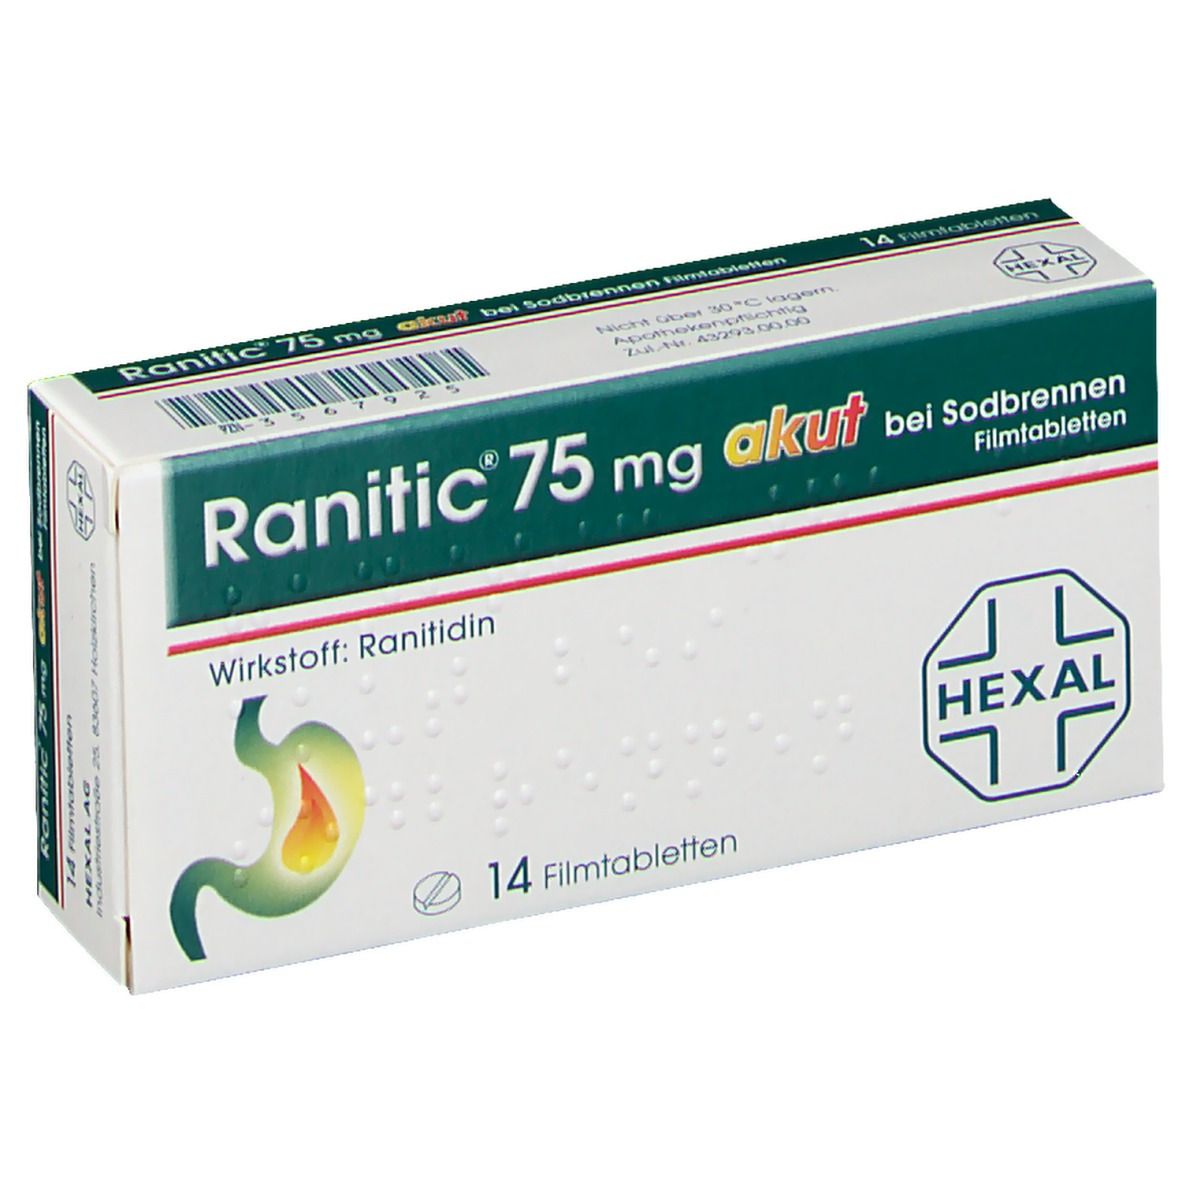 Ranitic® 75 mg akut bei Sodbrennen, Filmtabletten